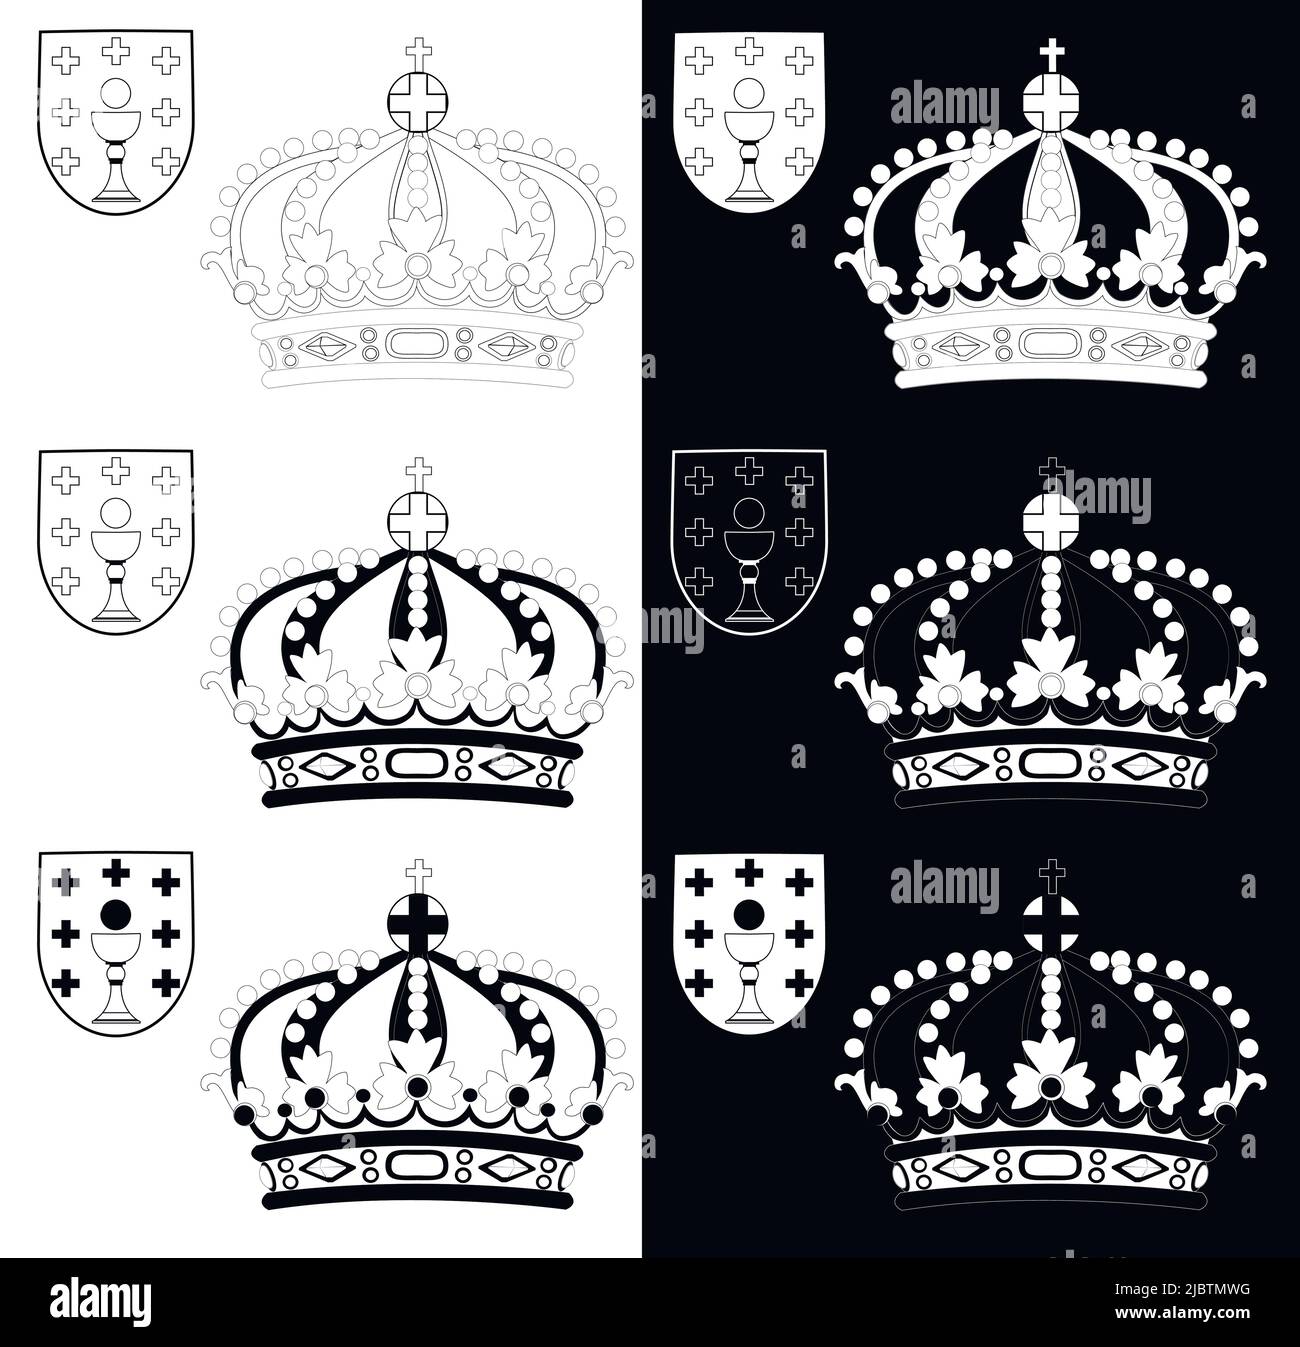 Krone von Galicien, schwarz-weiße Illustration. Vektorgrafik. Stock Vektor